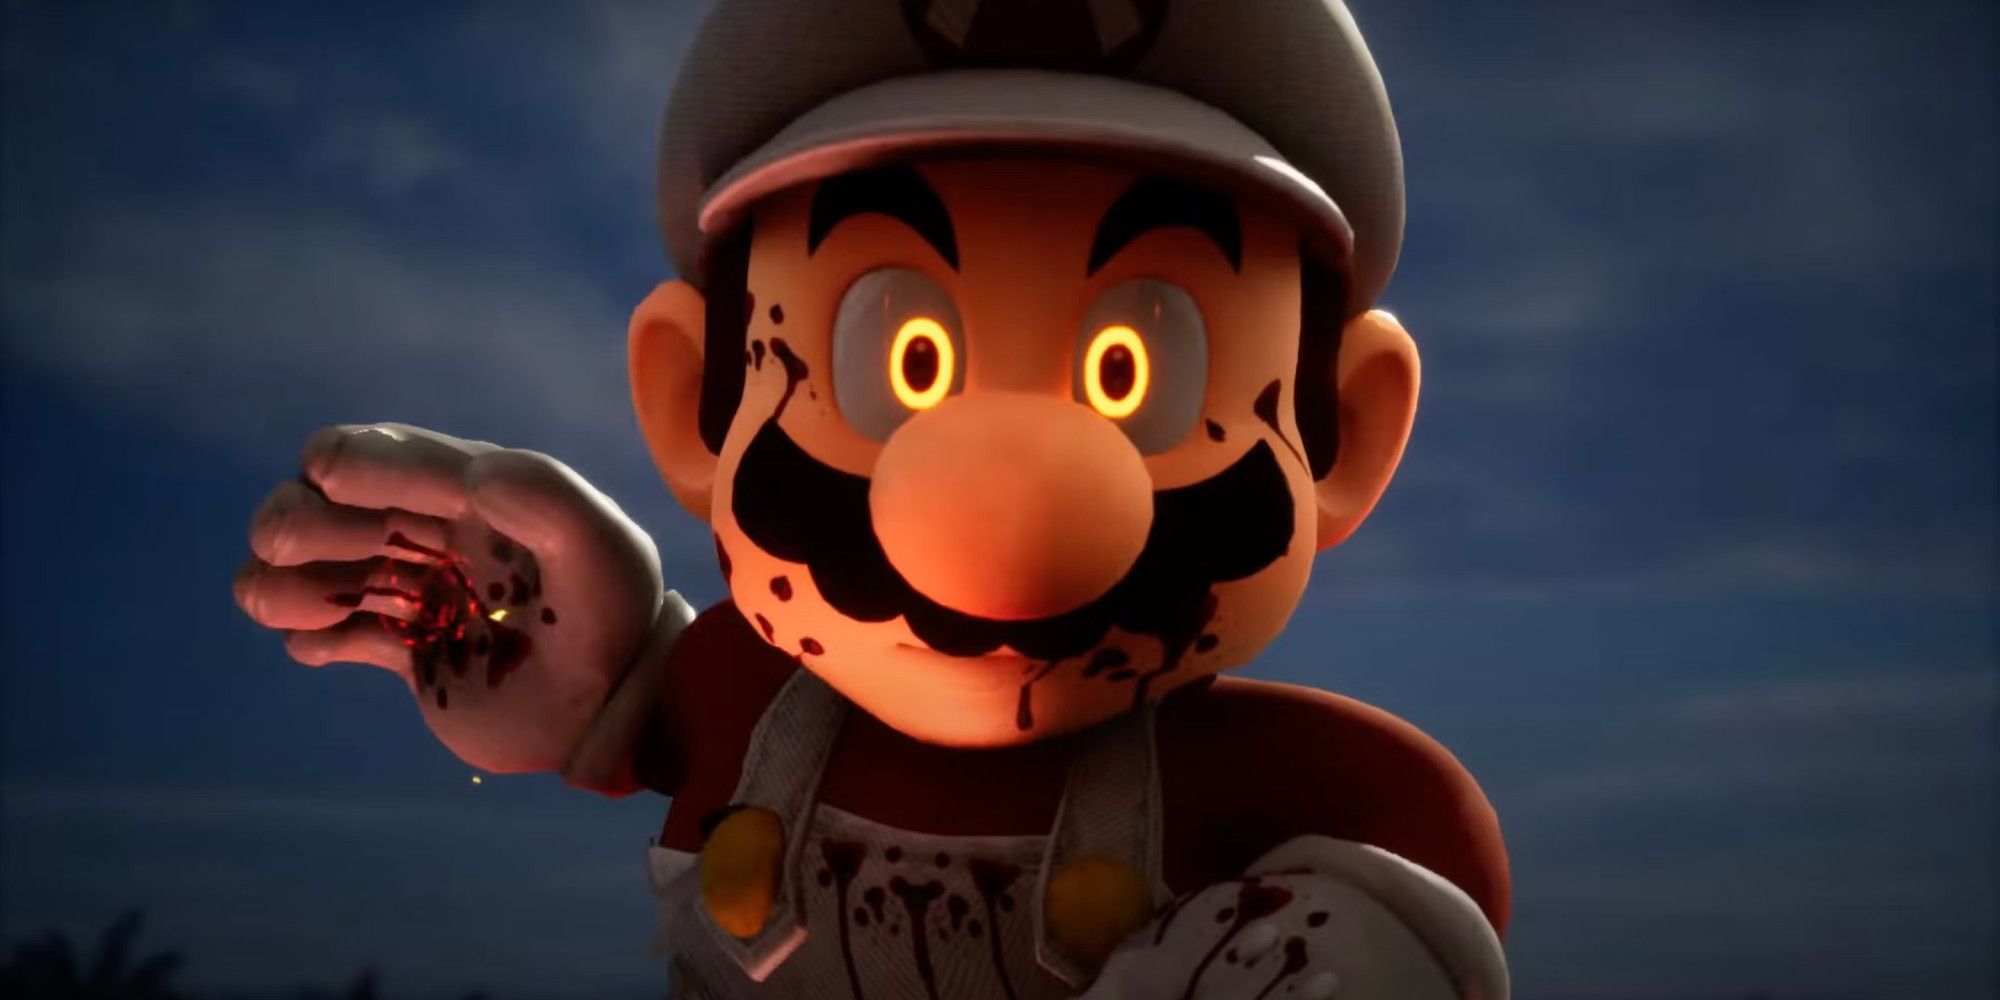 Unreal Engine 5 Evil Mario